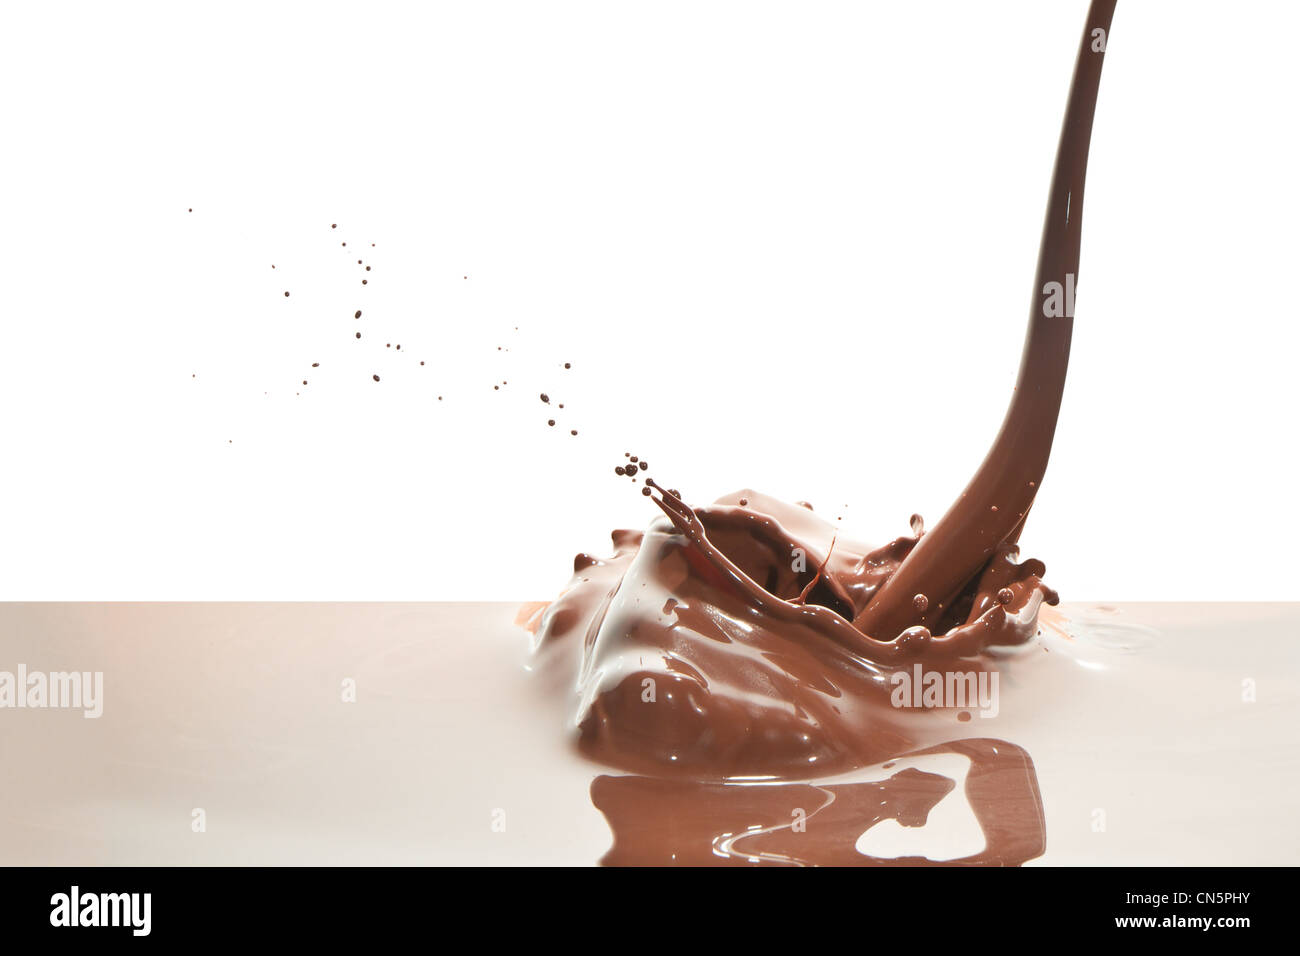 splash of chocolate isolated on white background Stock Photo